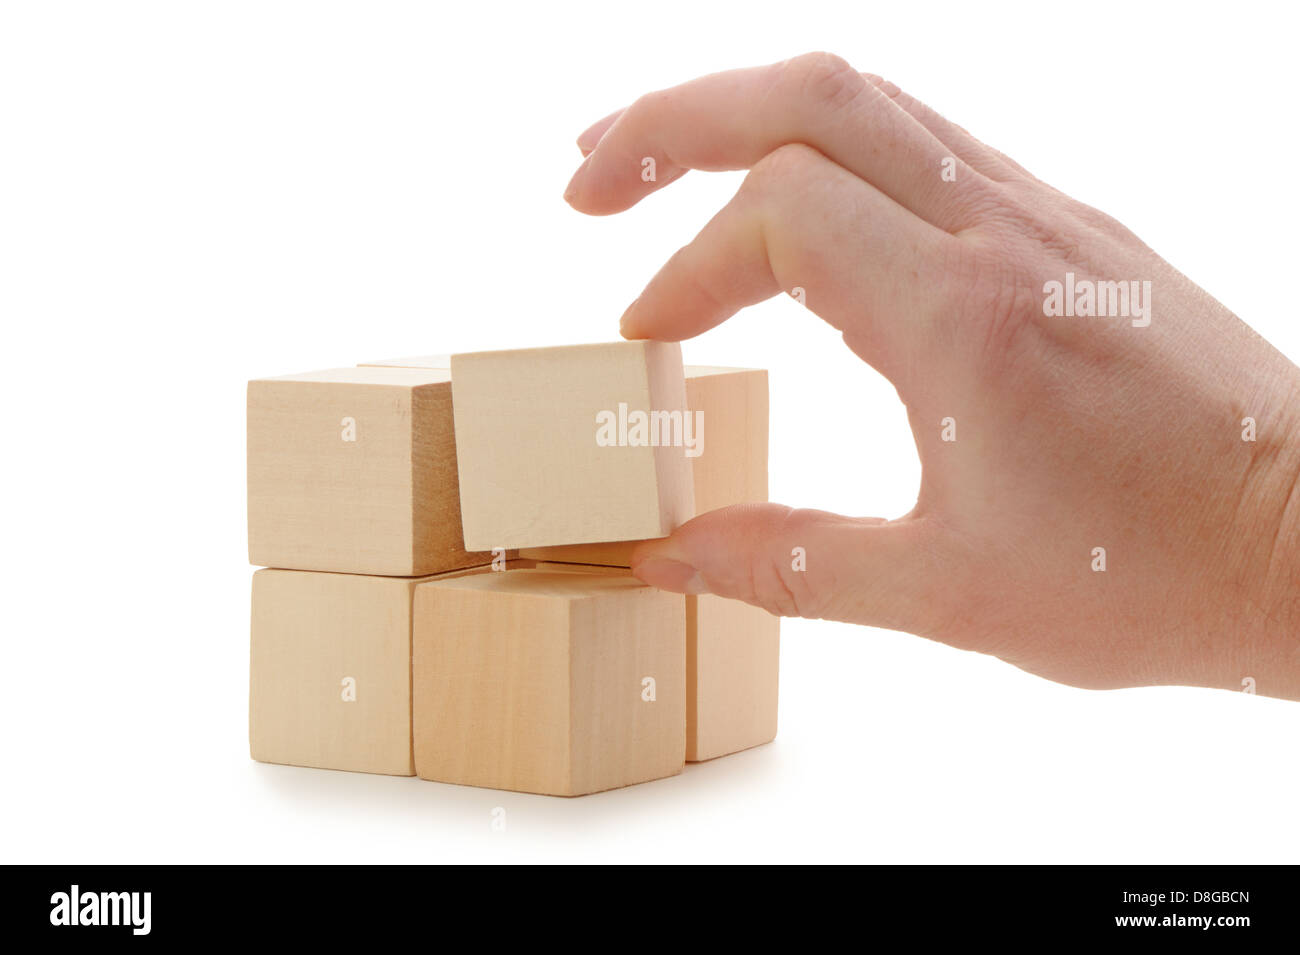 La mano se establece un cubo de madera Foto de stock